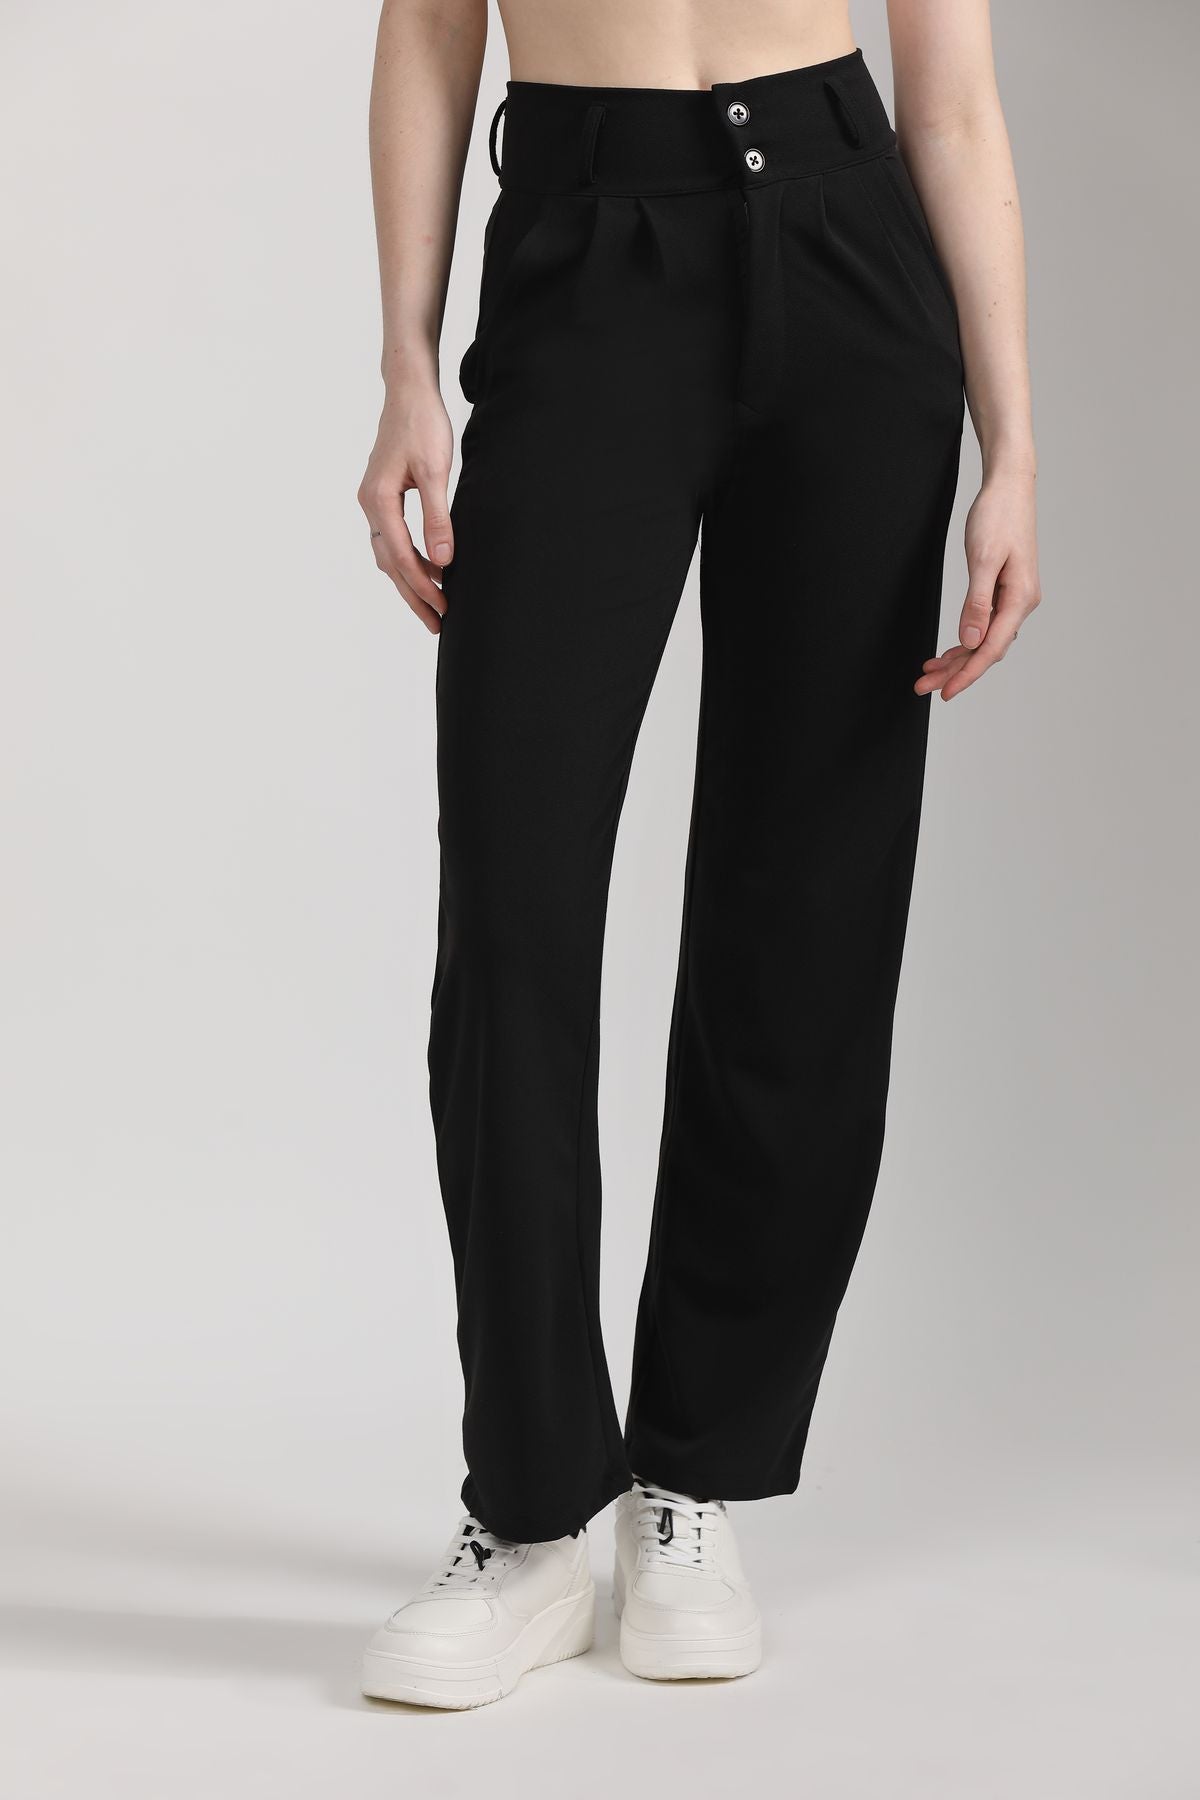 Black Trousers Women Wide Legs | Black Oversize Korean Pants - Women Office  Wear - Aliexpress